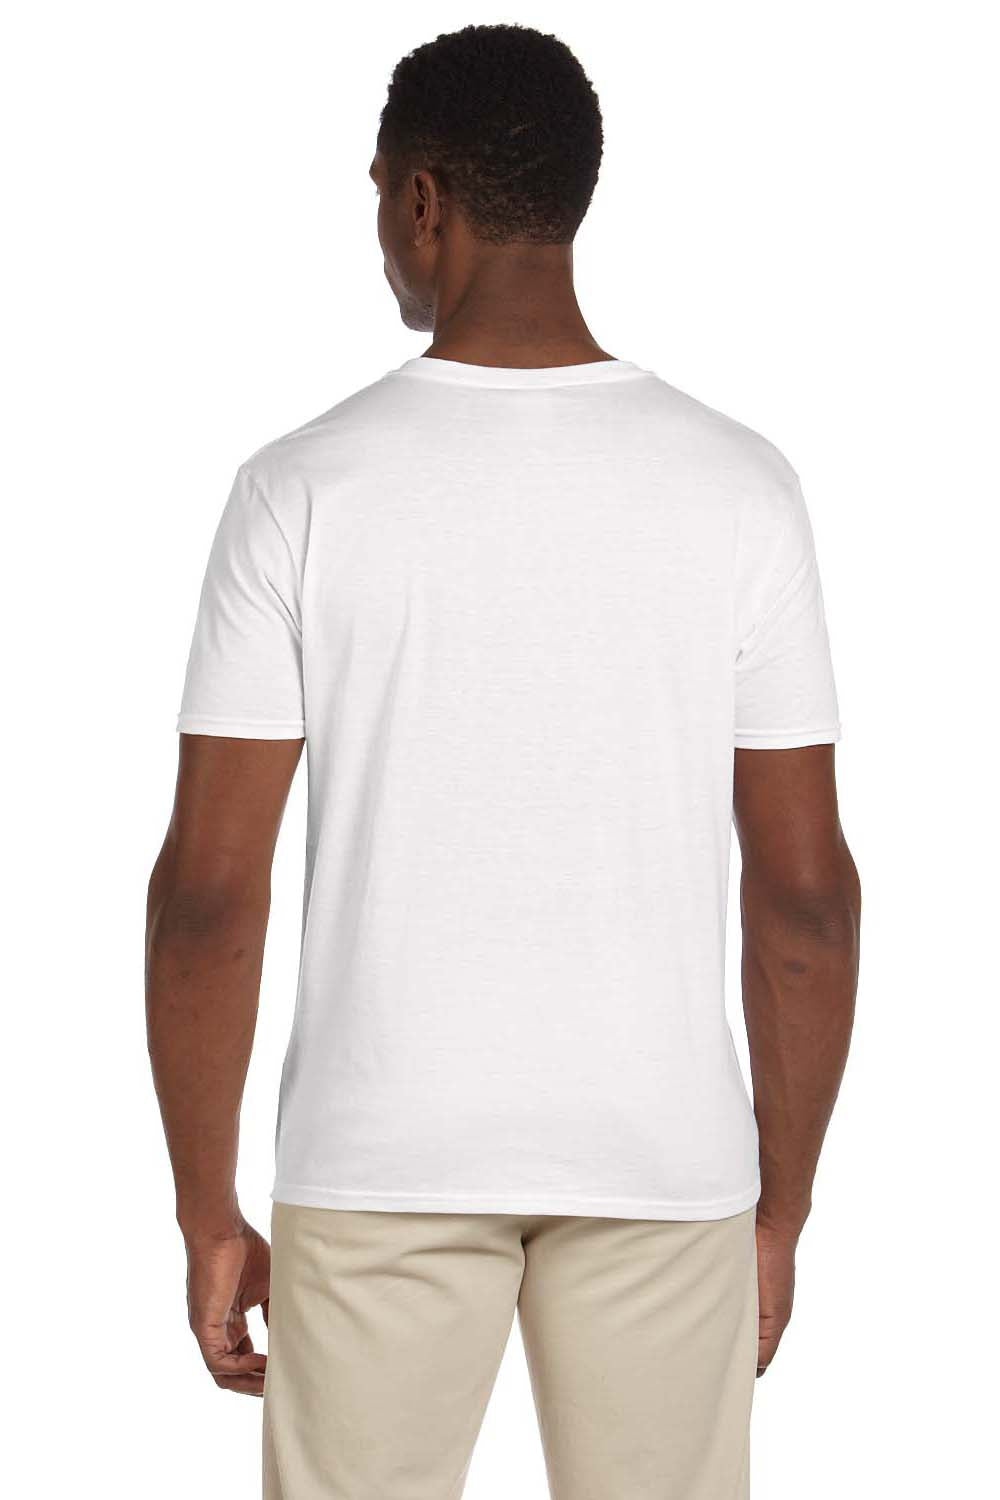 Gildan G64V Mens Softstyle Short Sleeve V-Neck T-Shirt White Back